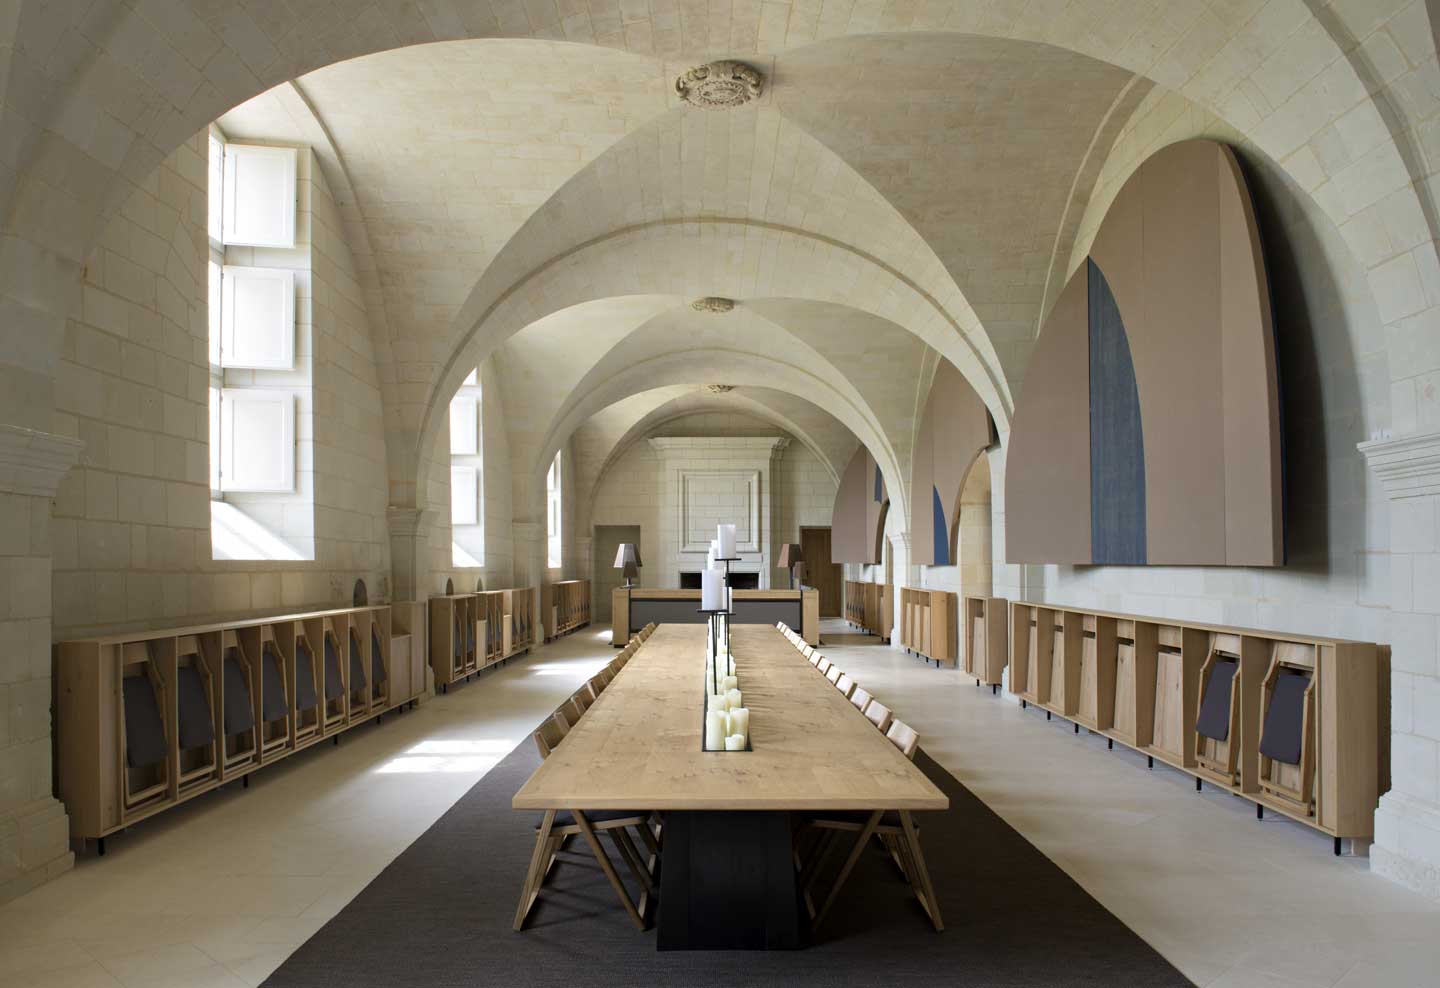 Hébergement insolite : dormir à l'abbaye de Fontevraud